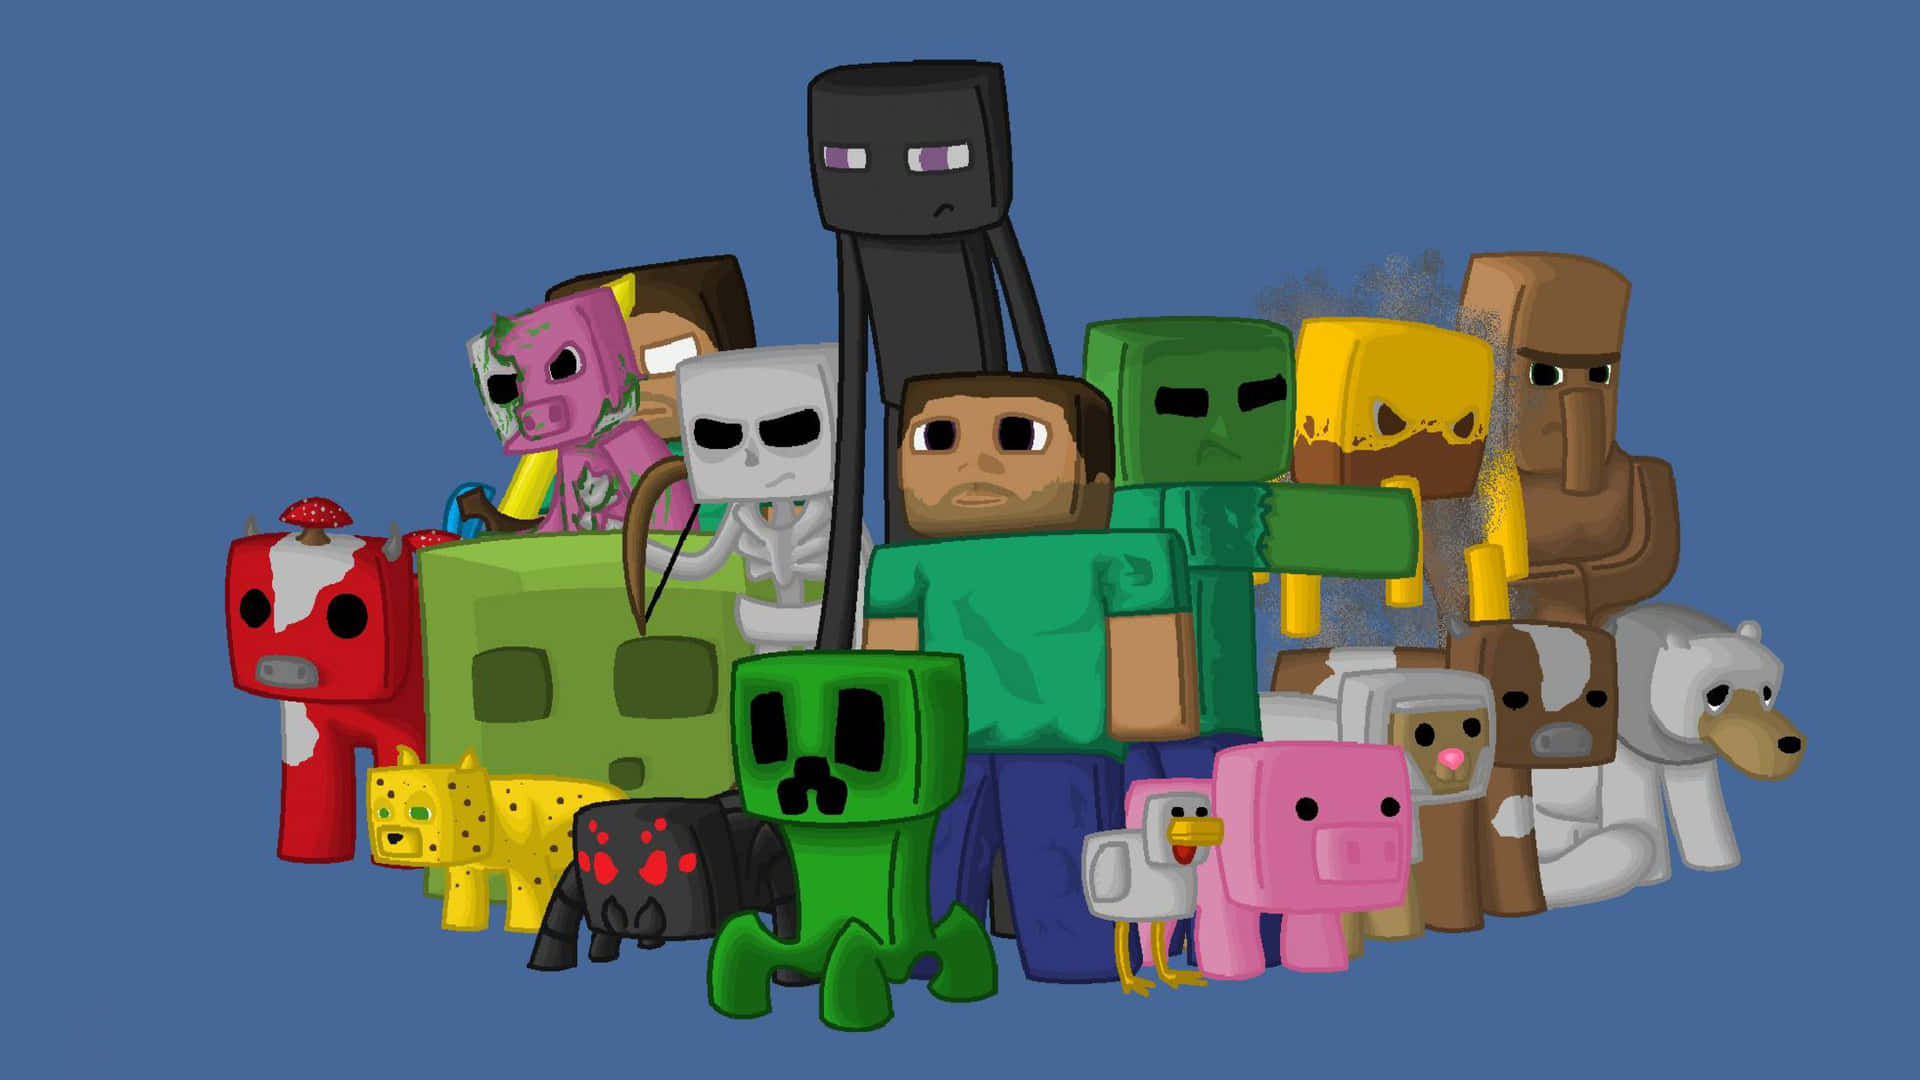 Skab din egen digitale verden med søde Minecraft-karakterer. Wallpaper